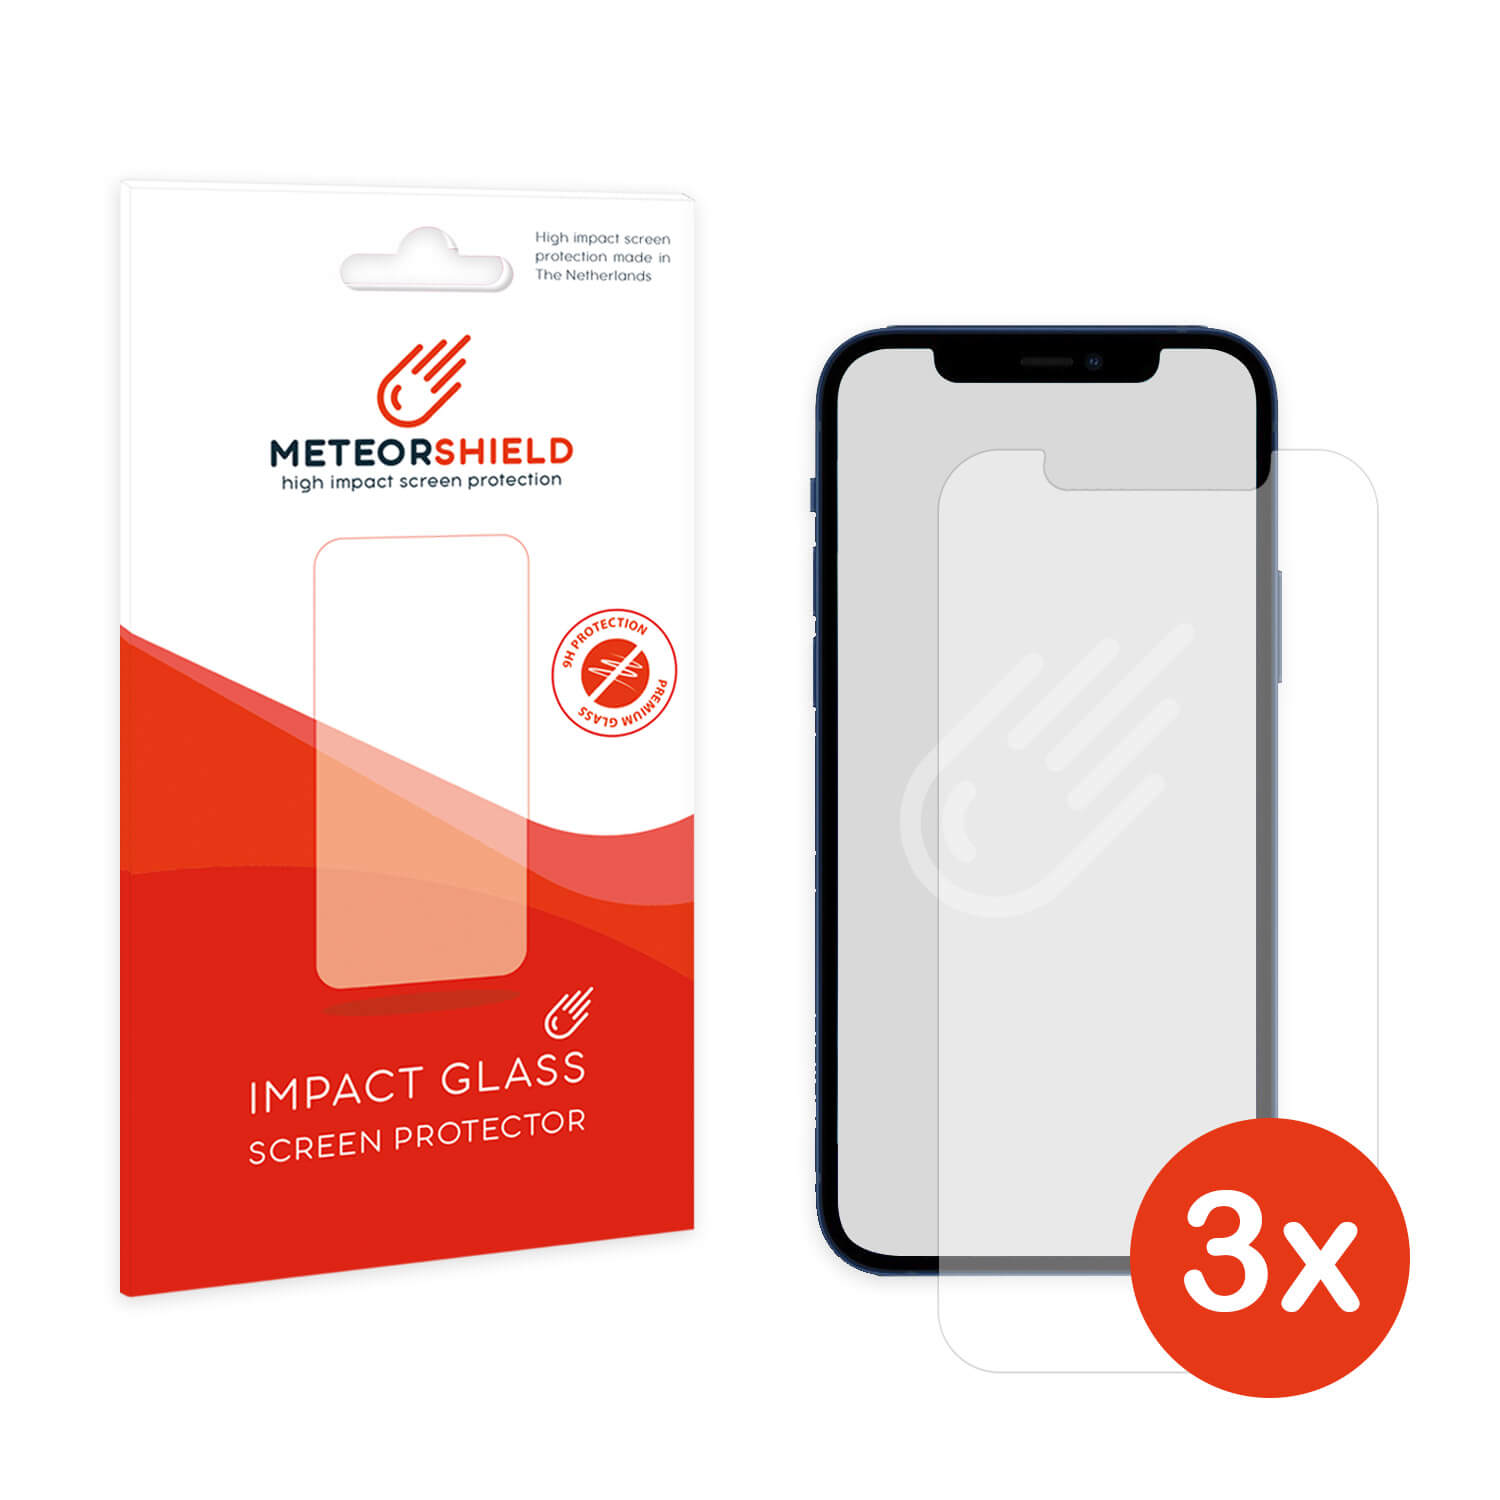 annuleren Voorstad Intuïtie iPhone 12 Pro Max screenprotector kopen? - Bestelscreenprotector.nl